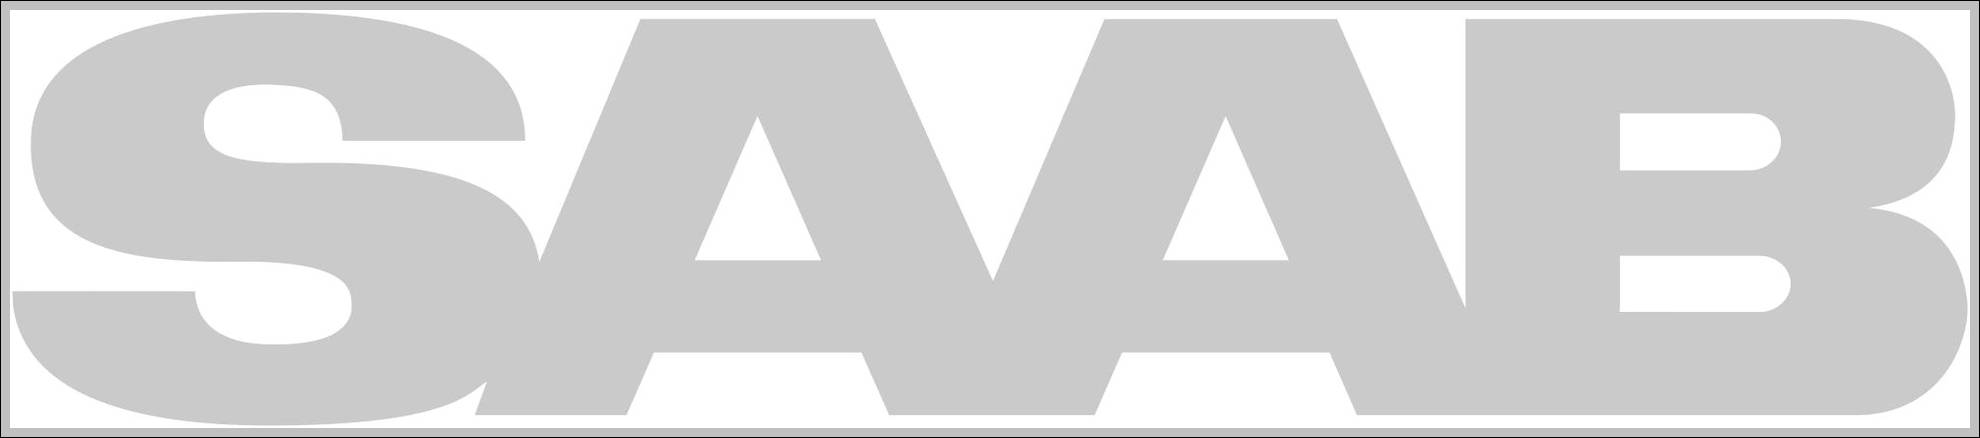 Saab Automobile sign